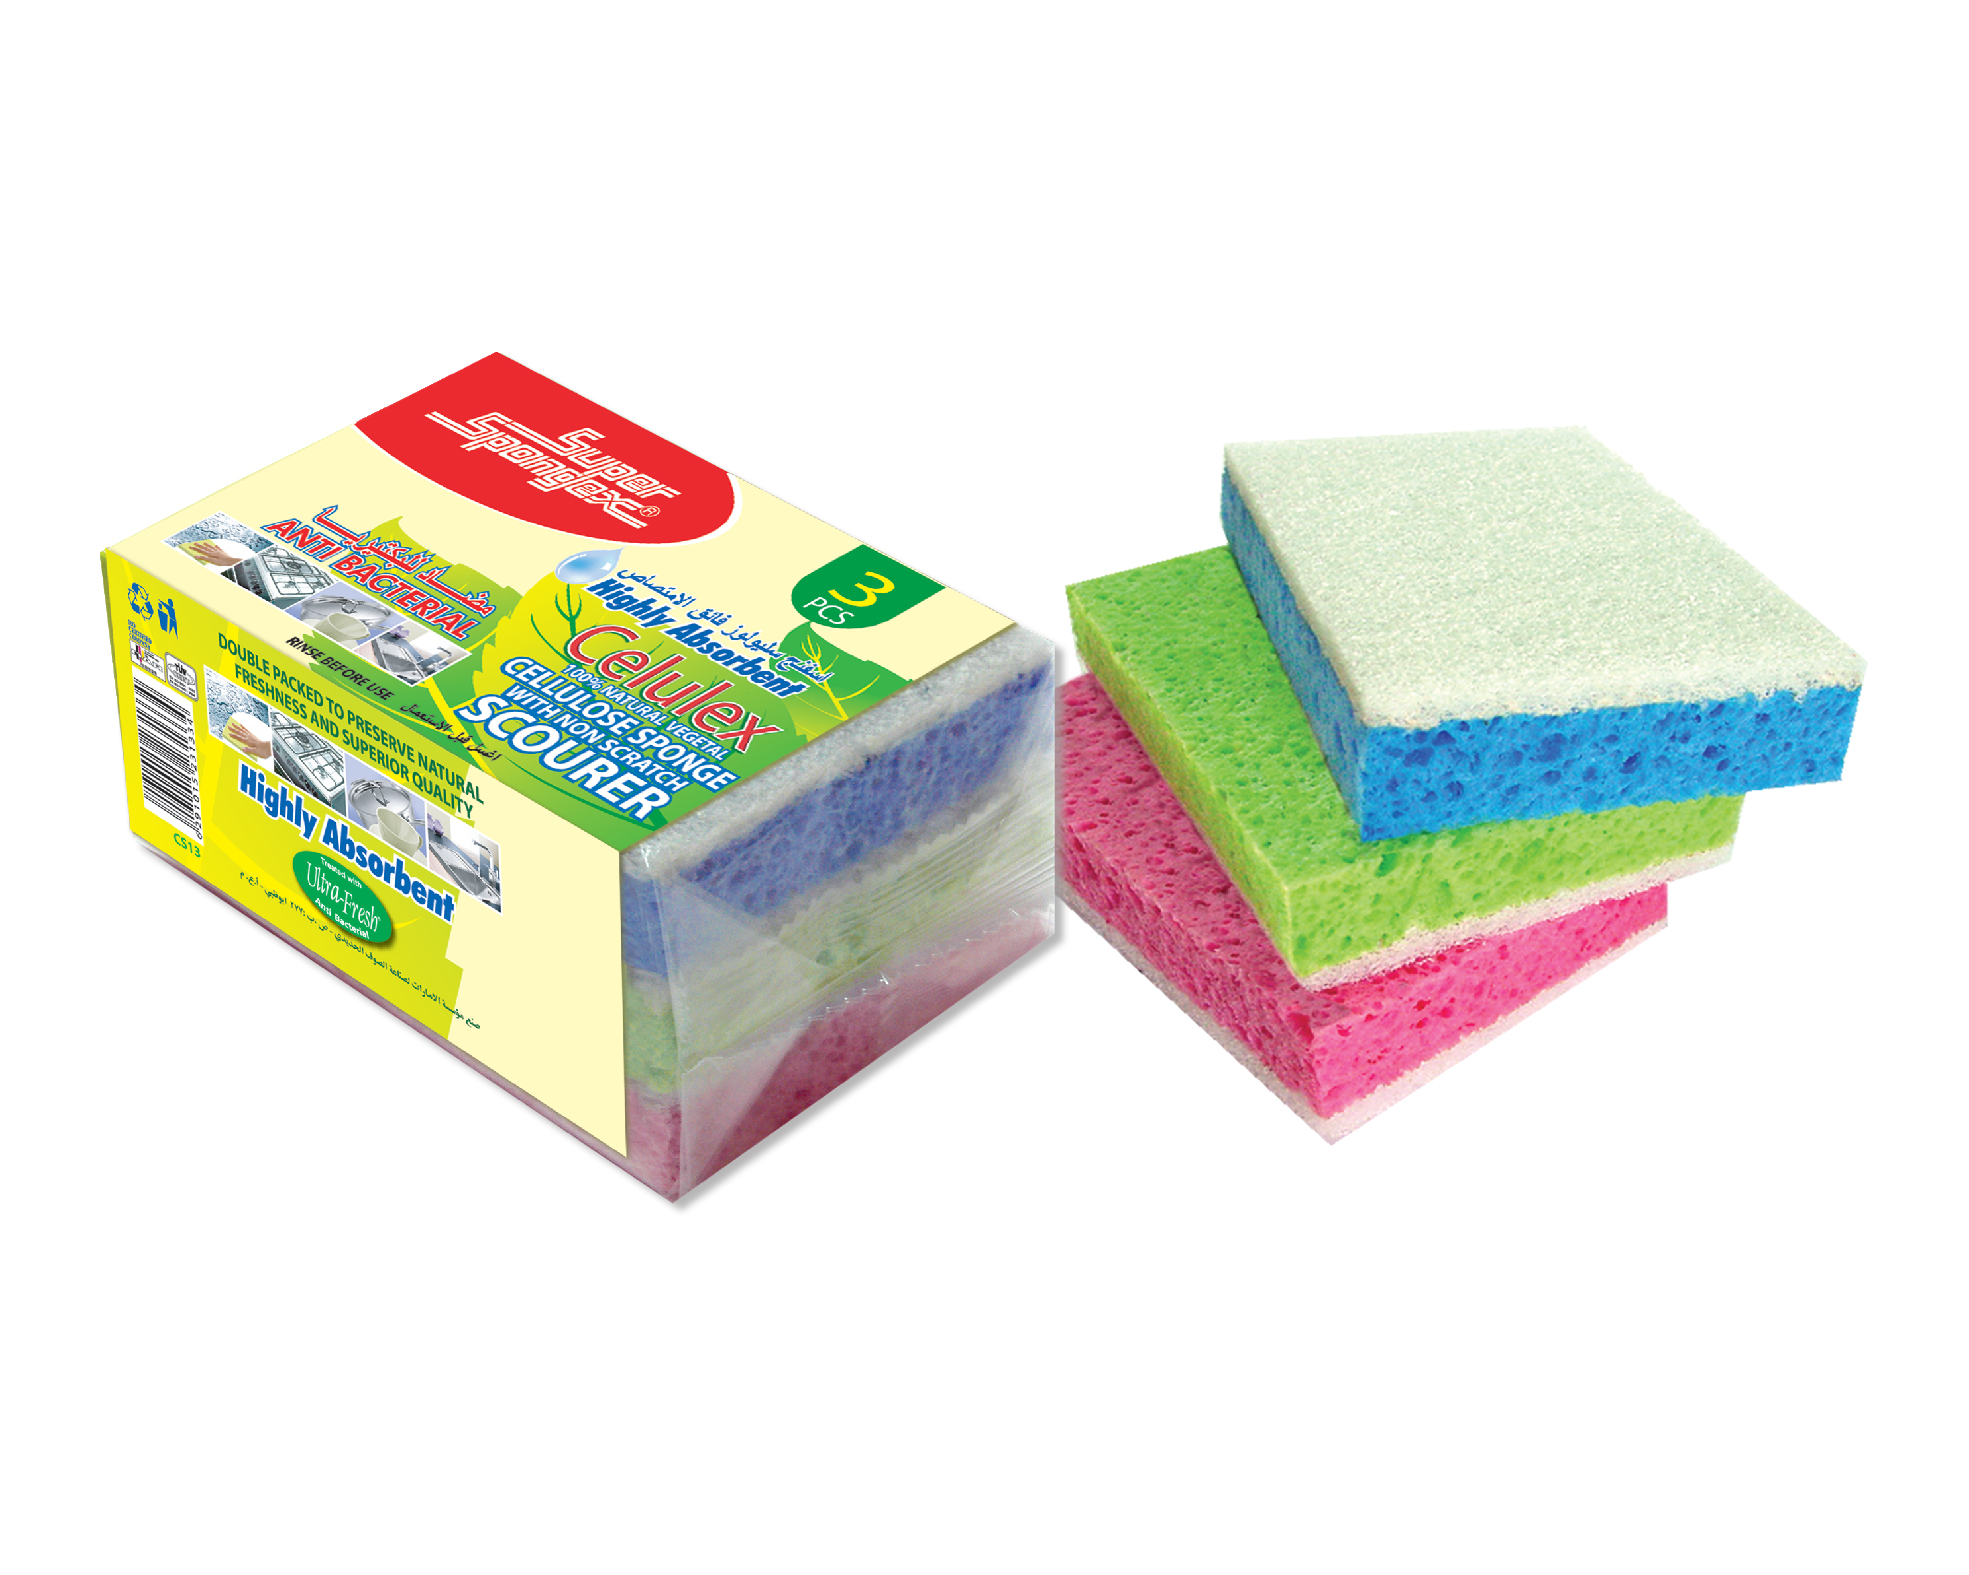 School Smart Cellulose Sponge Large